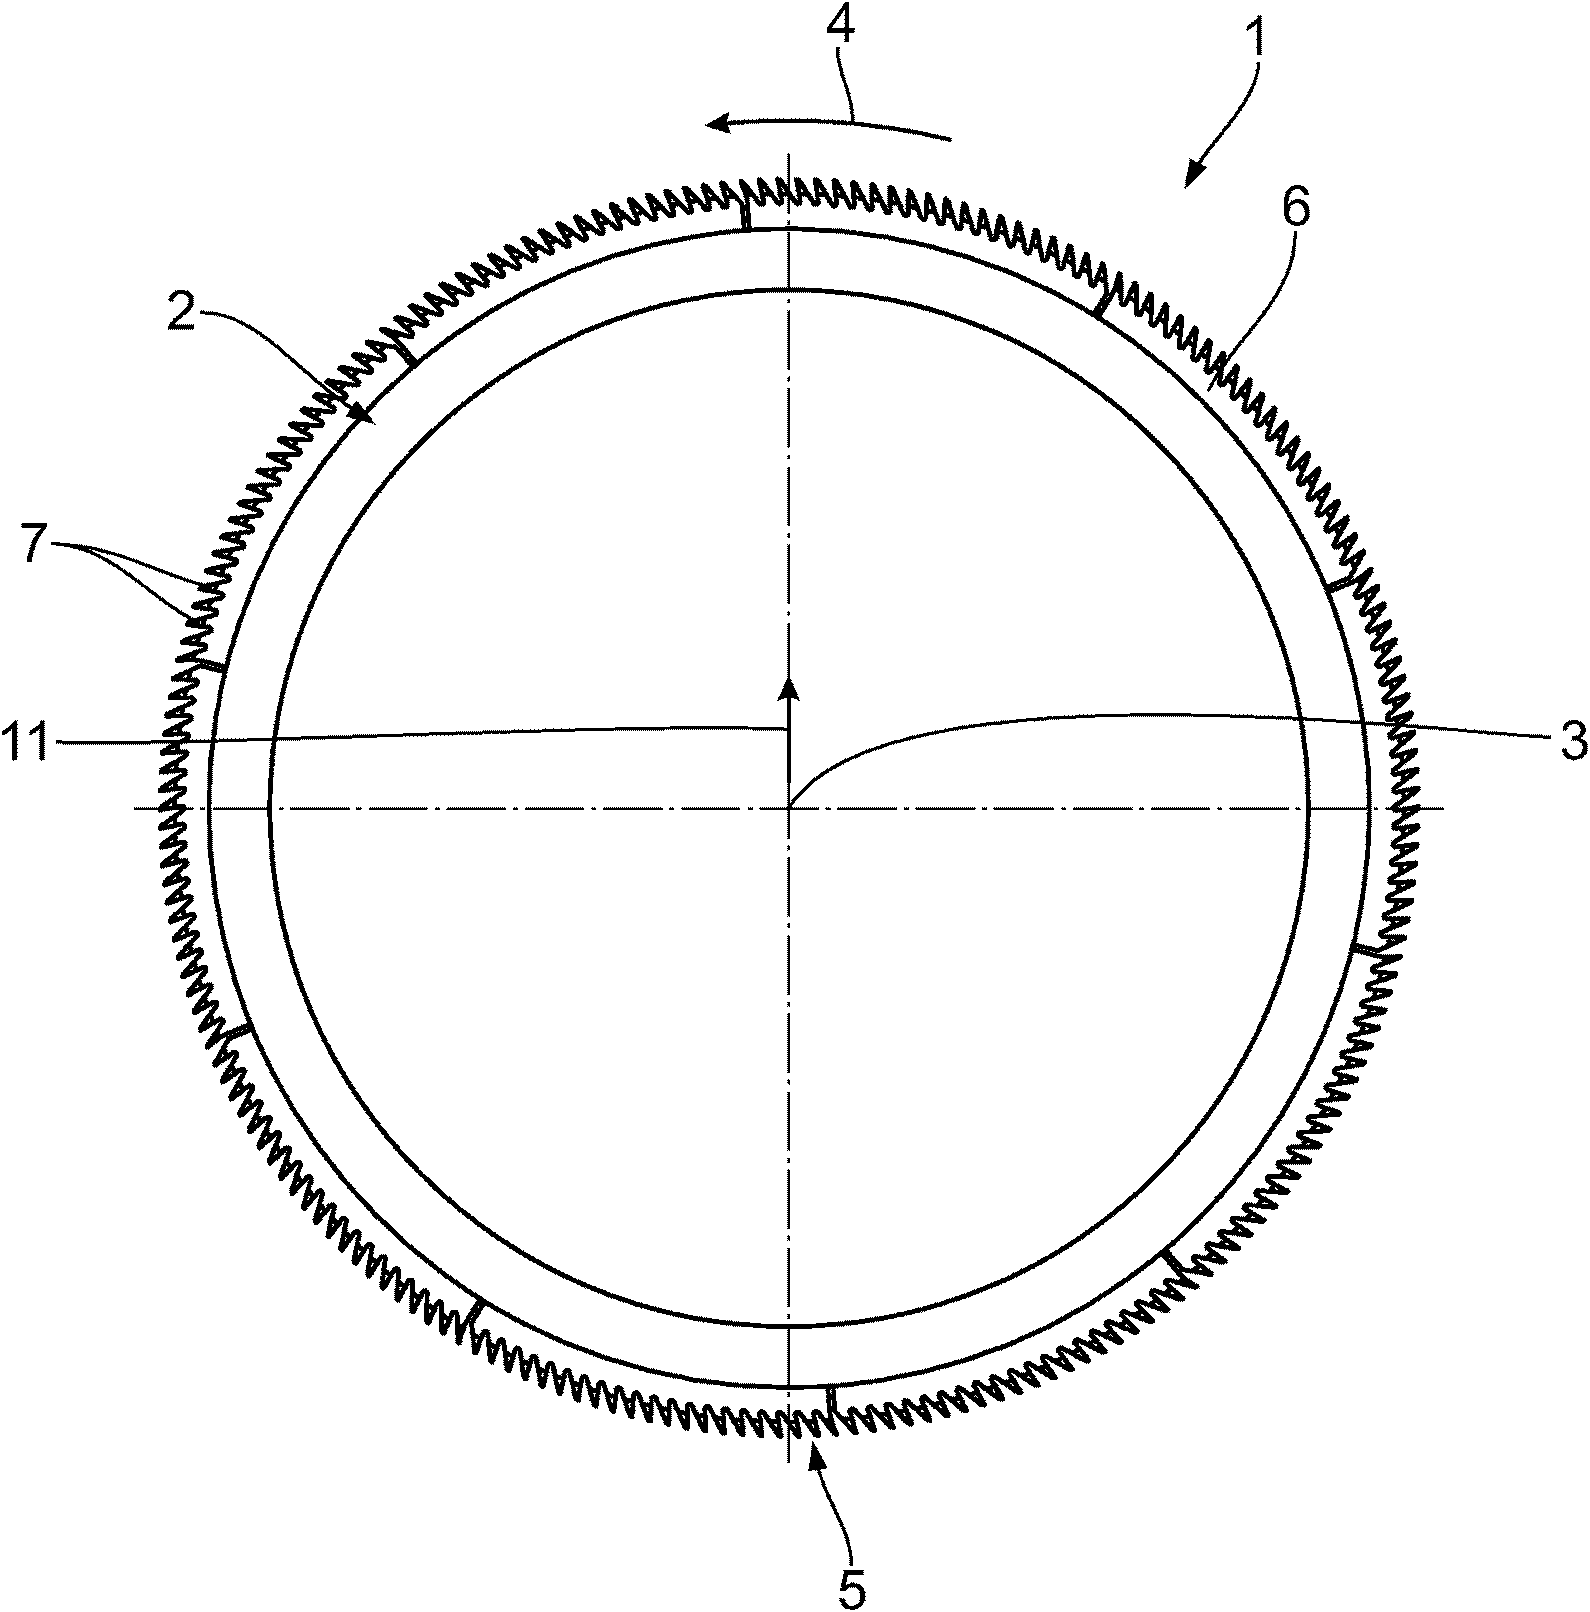 Comb segment for a circular comb